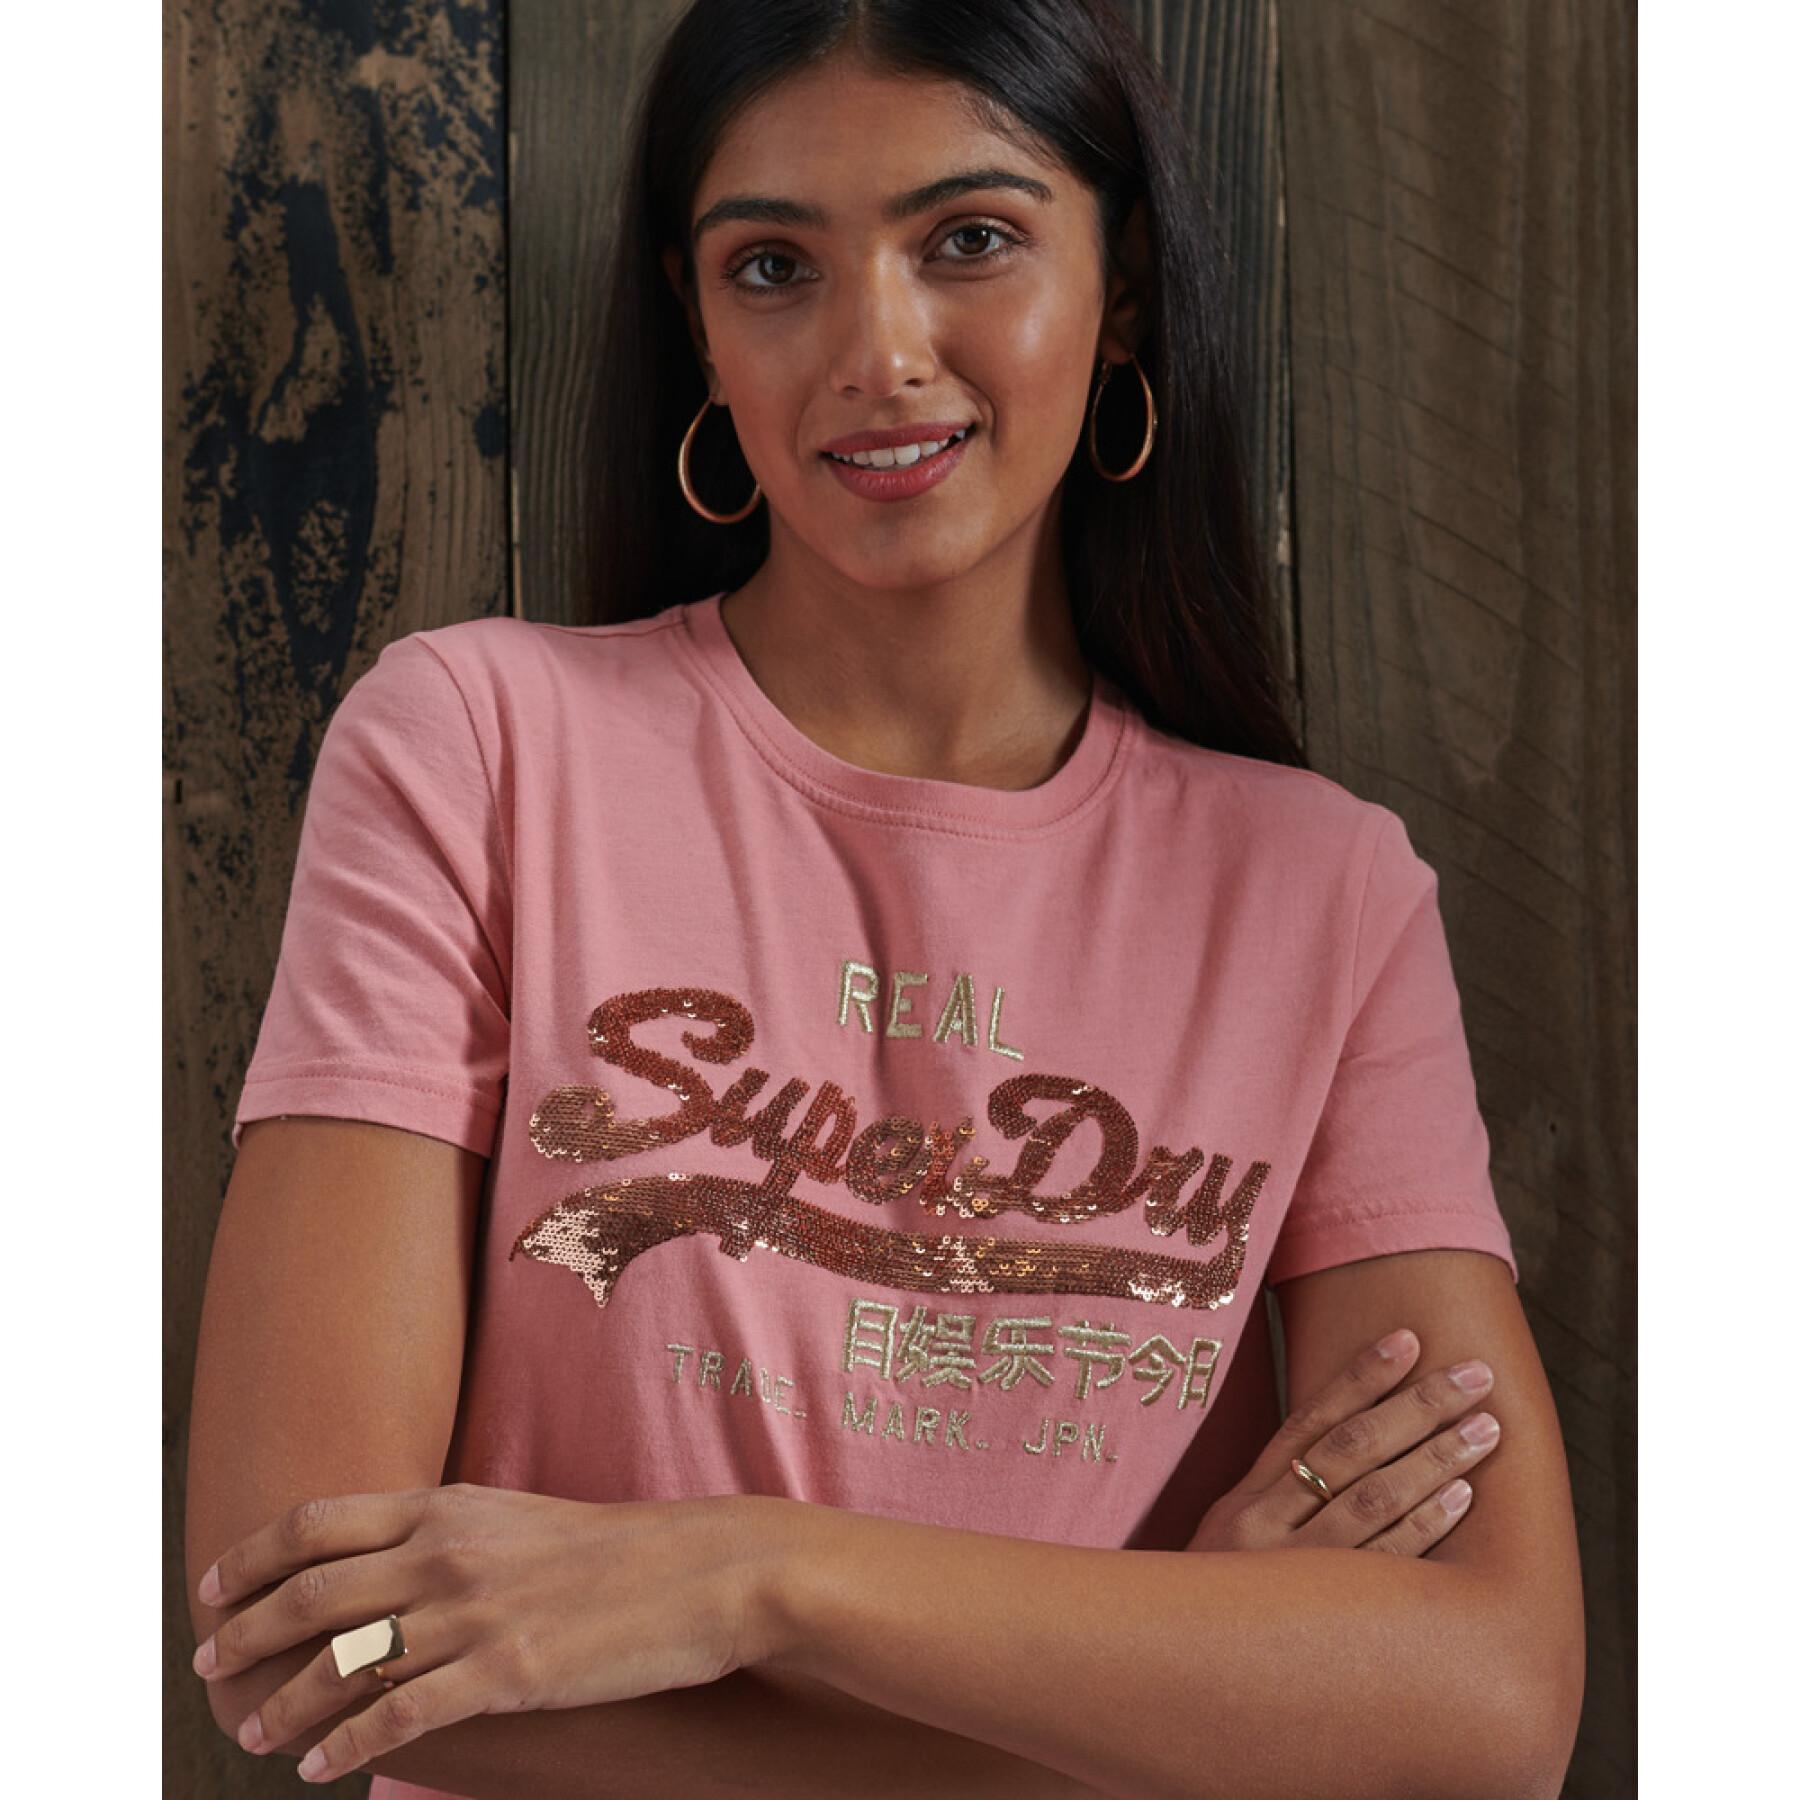 Vrouwen t-shirt met lovertjes Superdry Vintage Logo